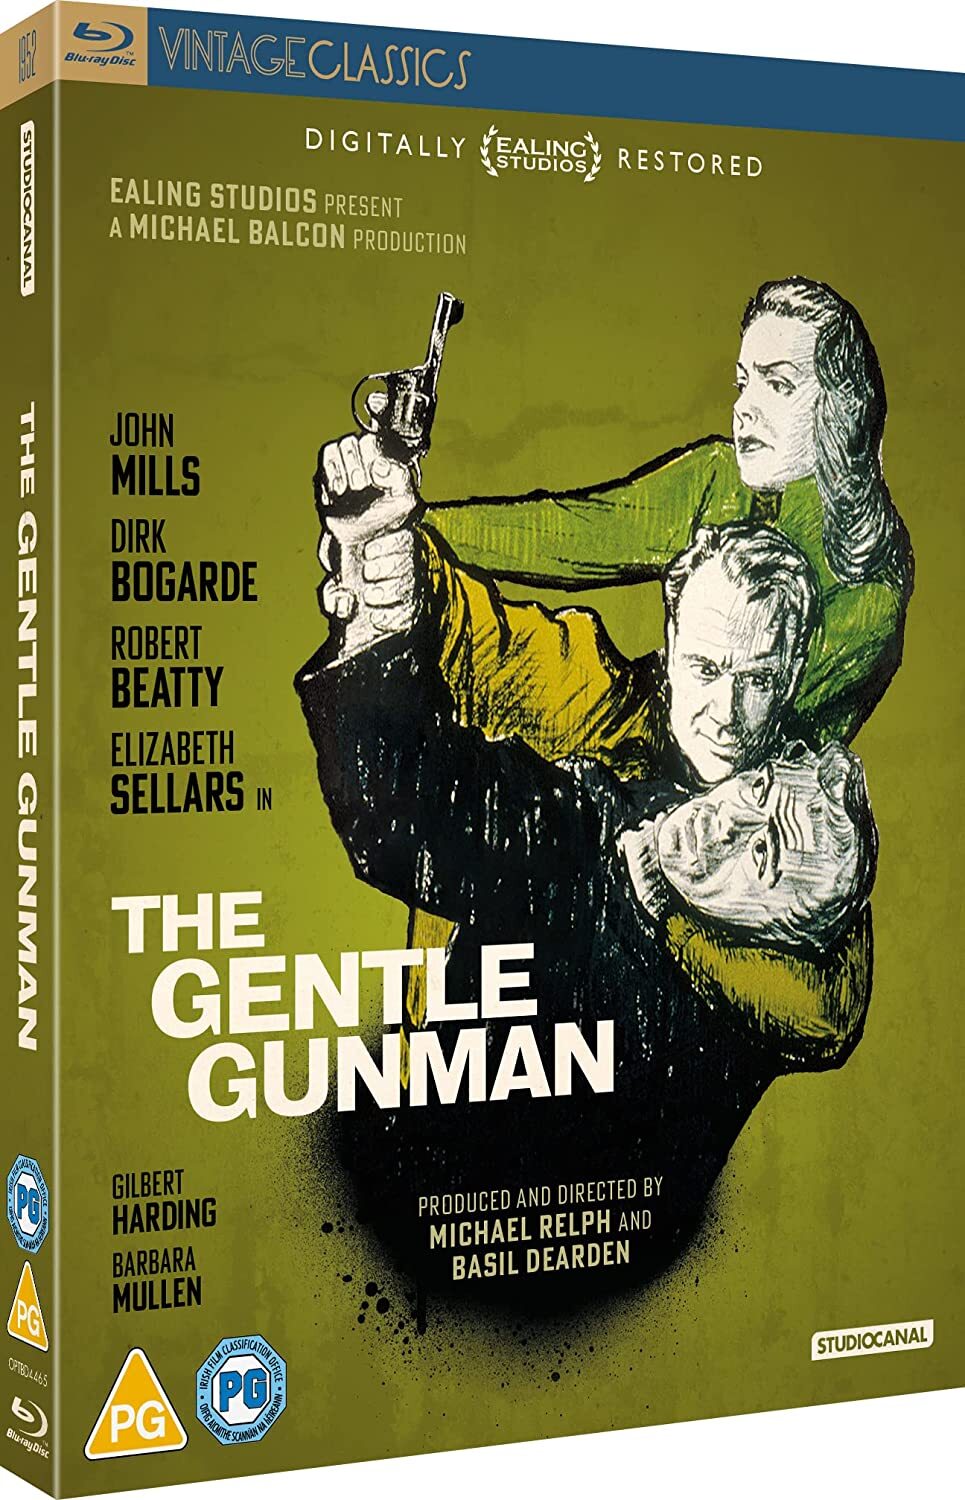 The Gentle Gunman (1952) de Basil Dearden - front cover